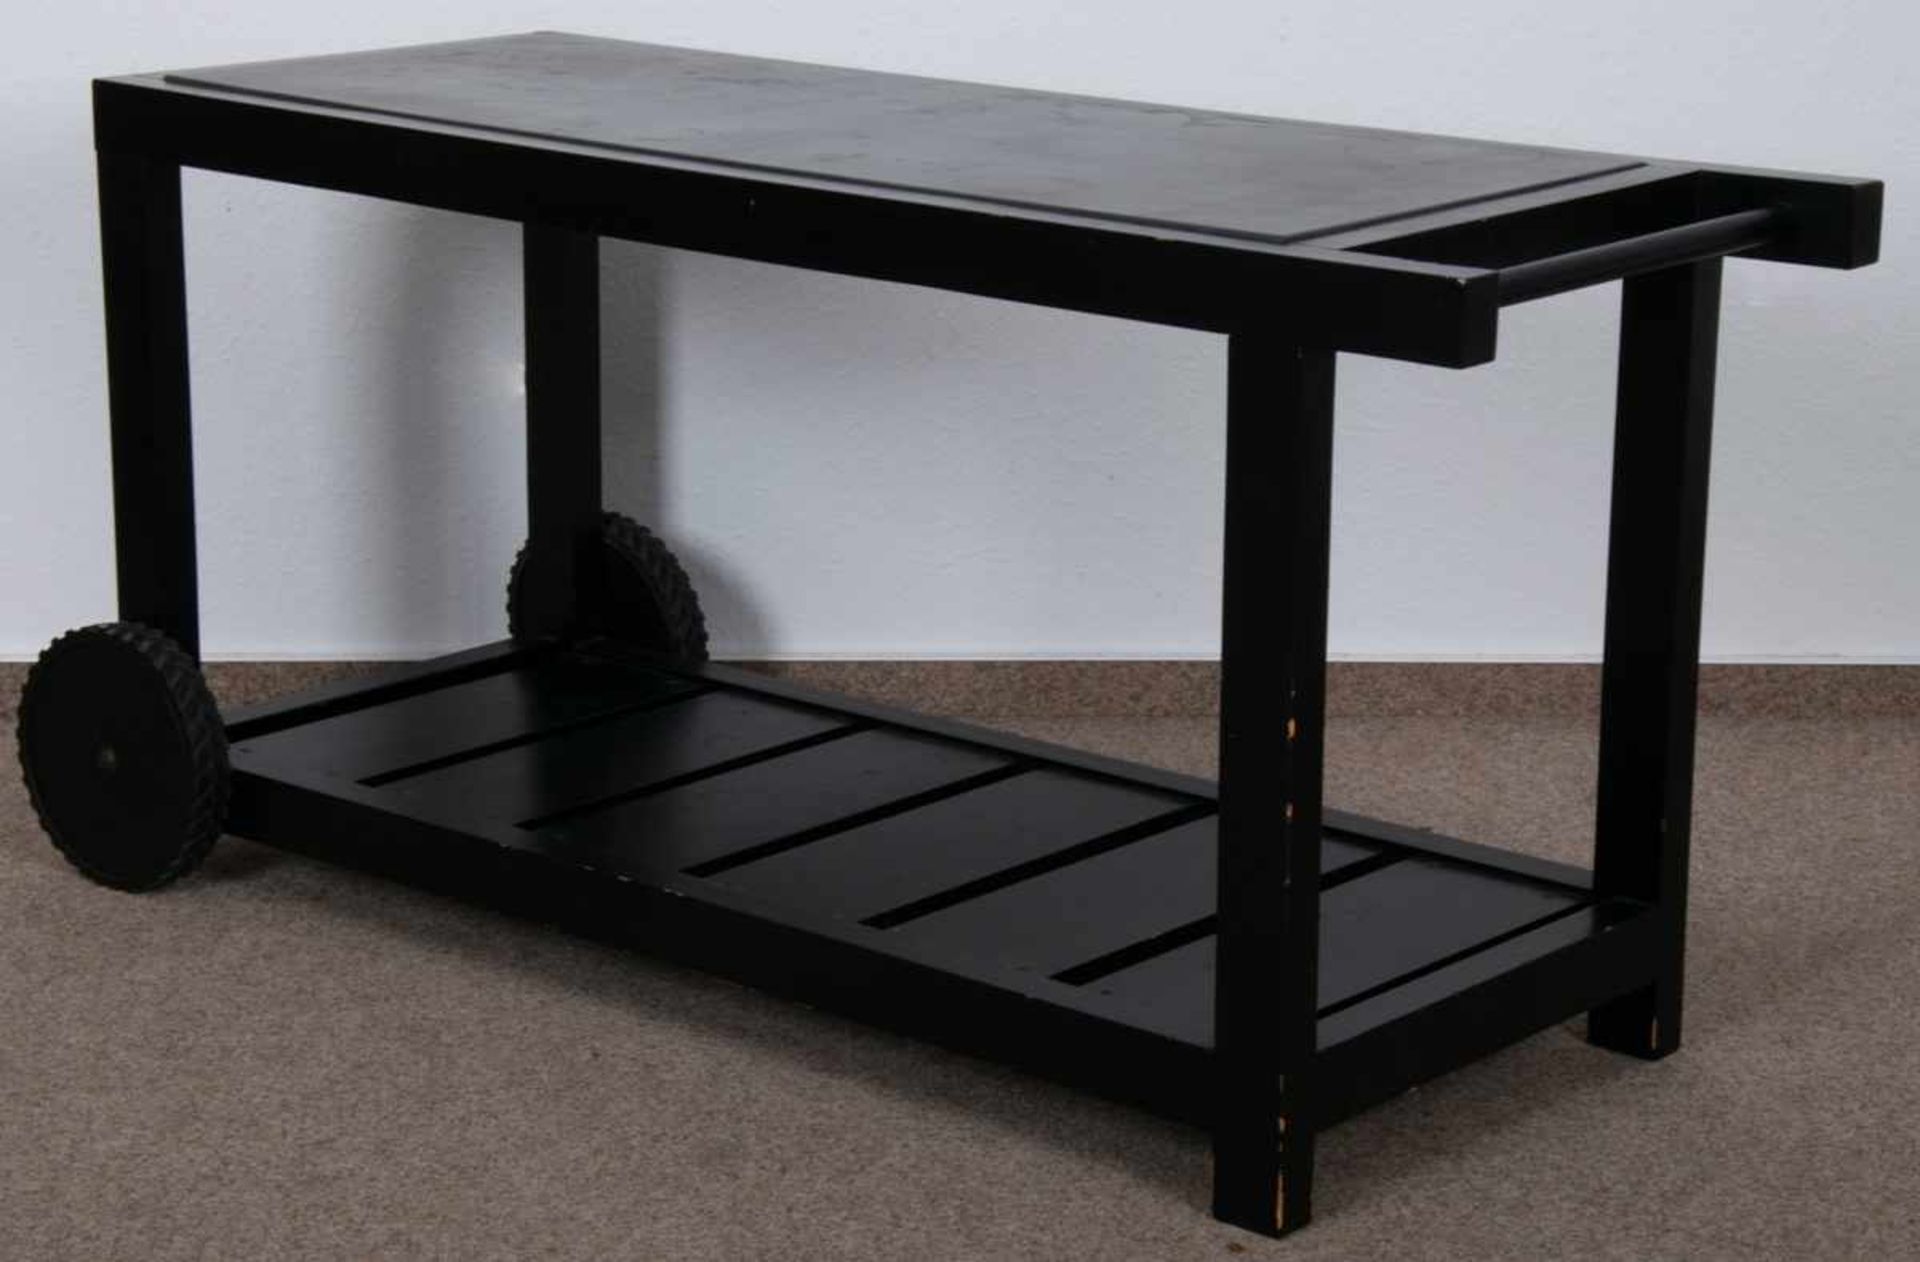 Rollbarer Gartentisch, schwarz lackiertes Nadelholz auf Kunststoffrollen gelagert/bedingt beweglich,